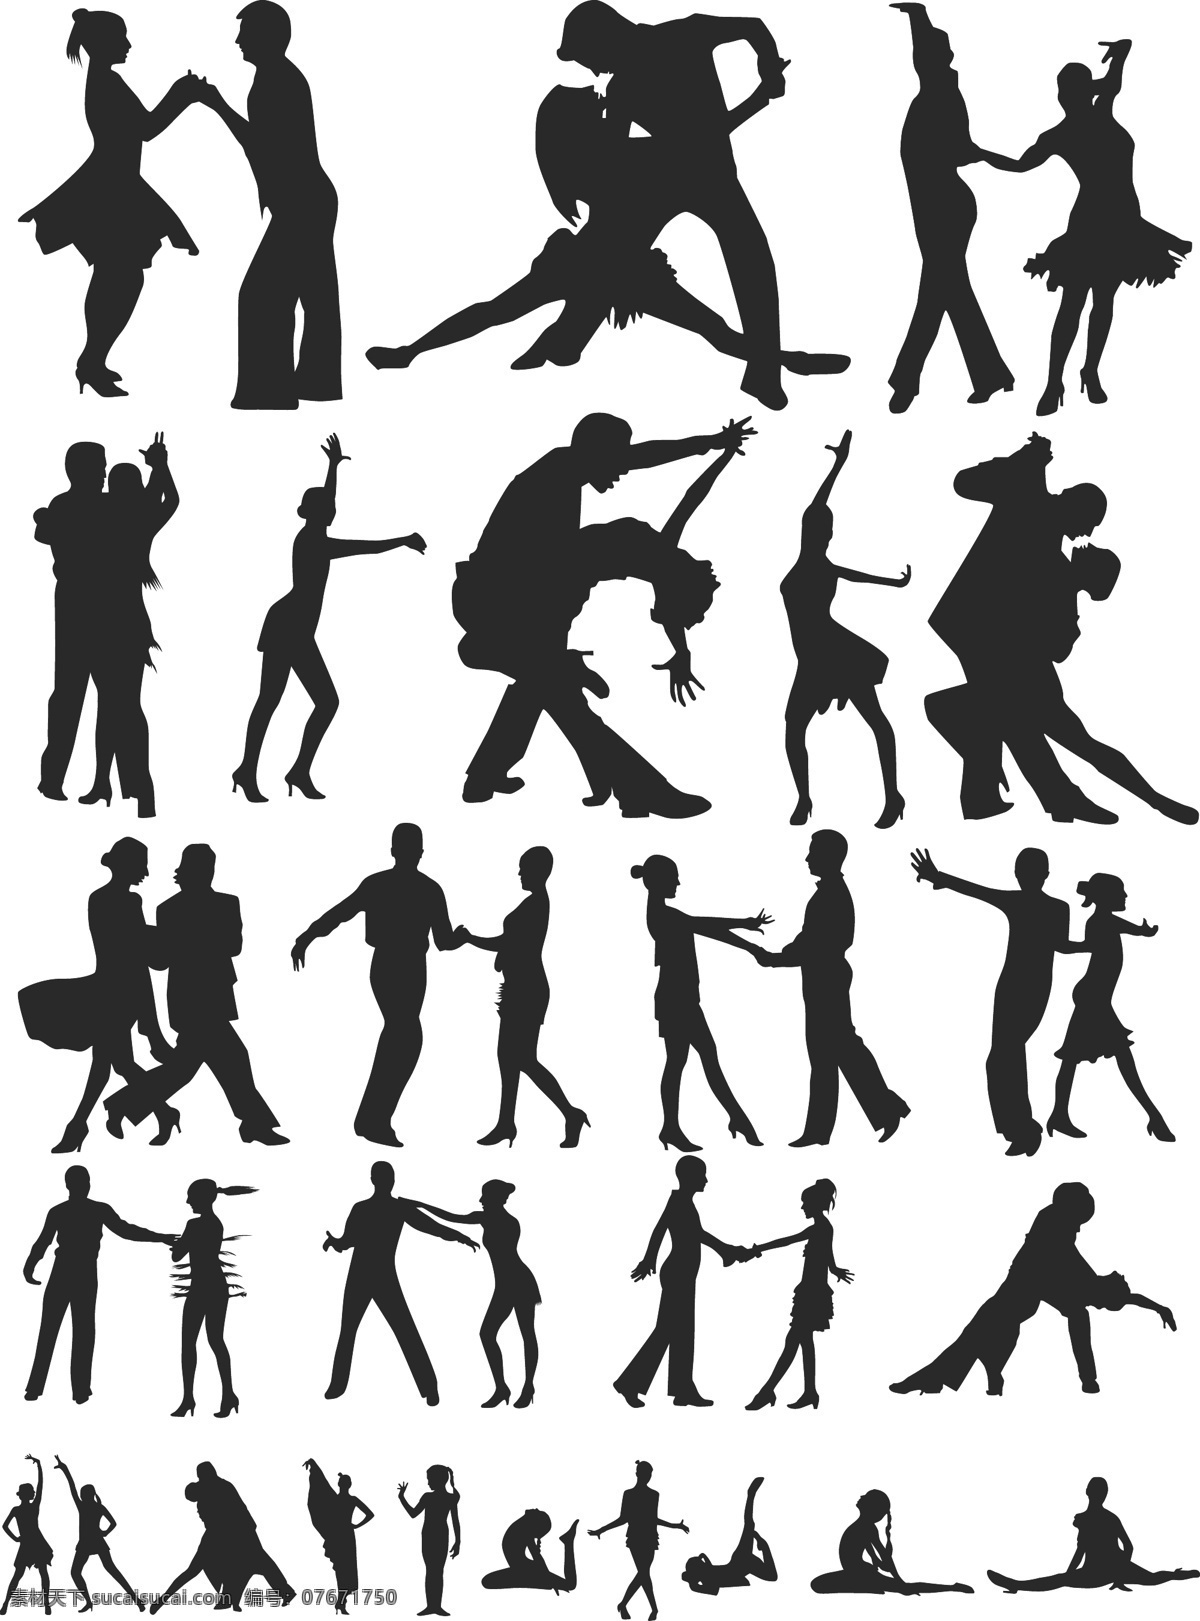 舞蹈 跳舞 交际舞 热舞 舞动 情侣 舞伴 情人 人物剪影 爱人夫妻 人物矢量素材 妇女女性 矢量人物 矢量